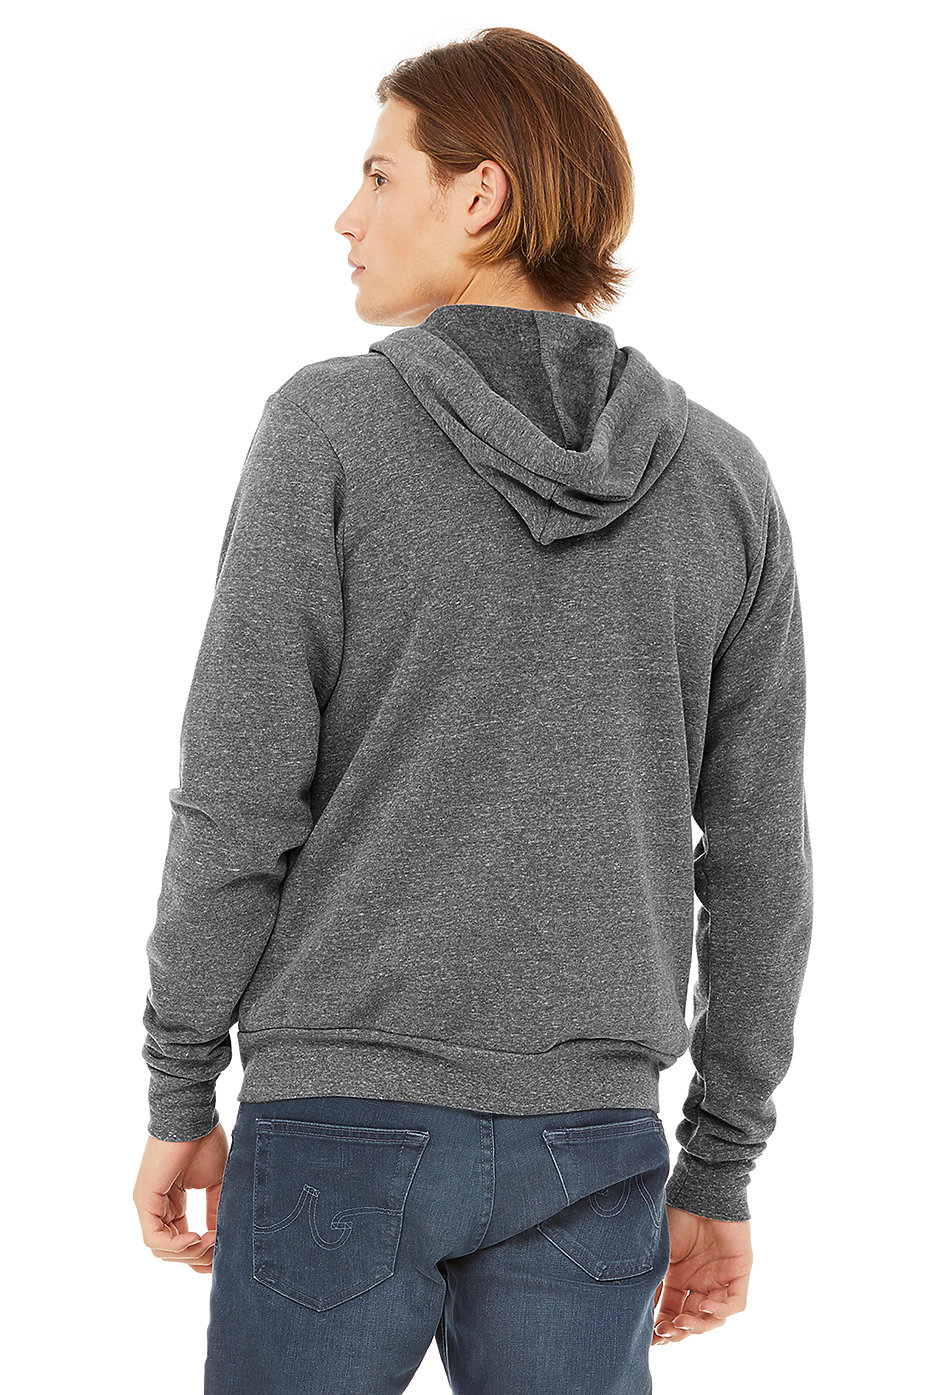 Zip Up Hoodies | Blank Hoodies Wholesale | Custom Sweatshirts | Unisex ...